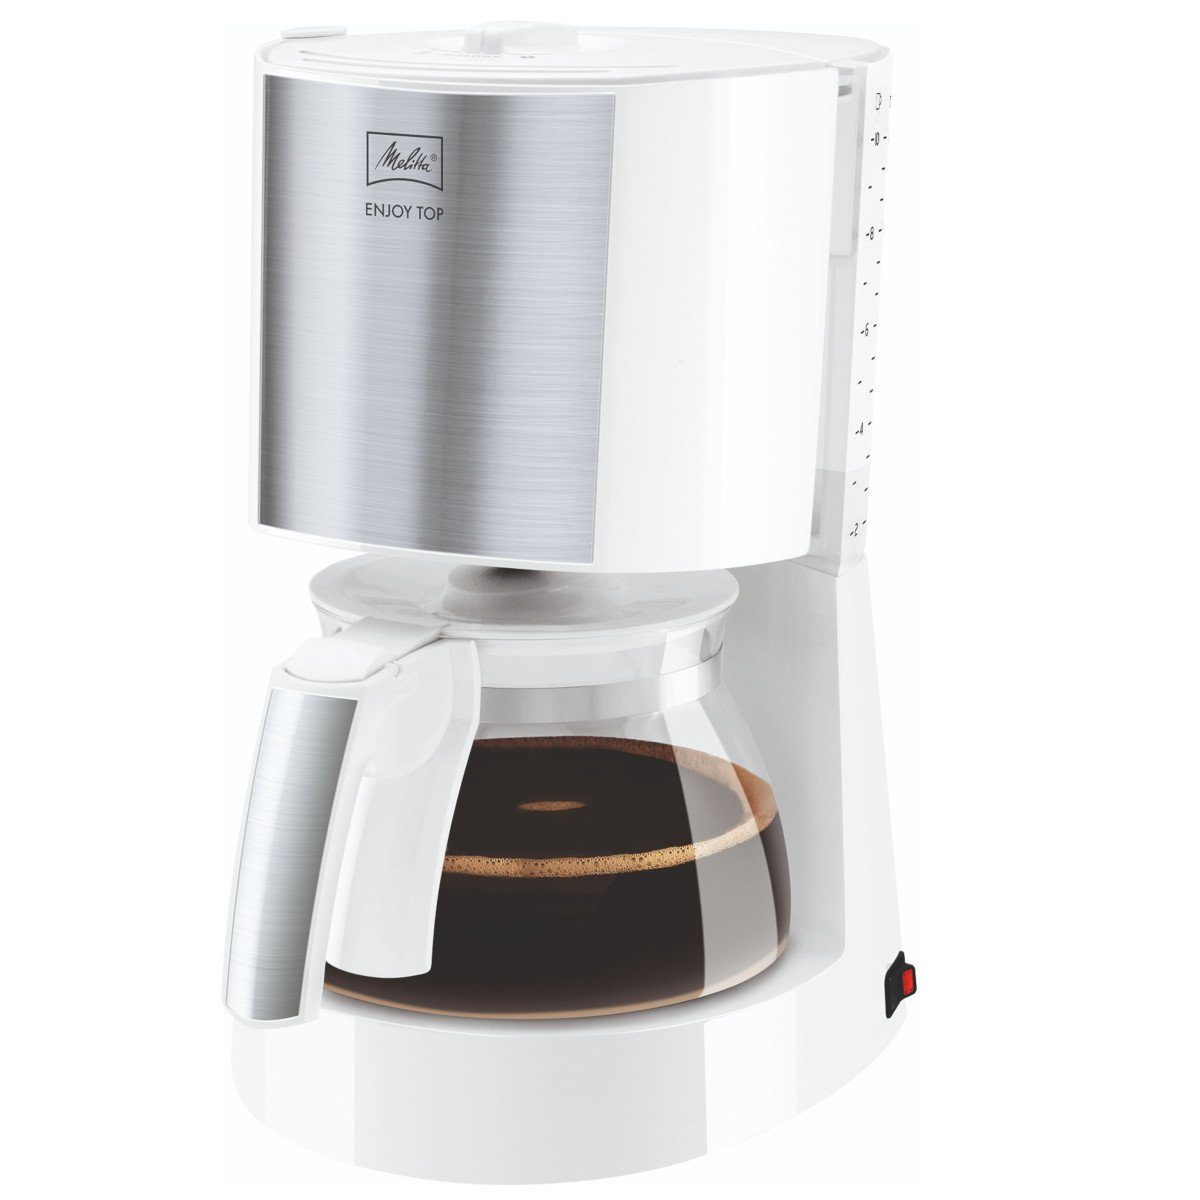 Melitta Filterkaffeemaschine Enjoy Top 1017-03 weiß von Volle abgestimmte 10 Tassen Brühtemperatur Aromaentfaltung Glaskanne, 1x4, durch perfekt 93° die